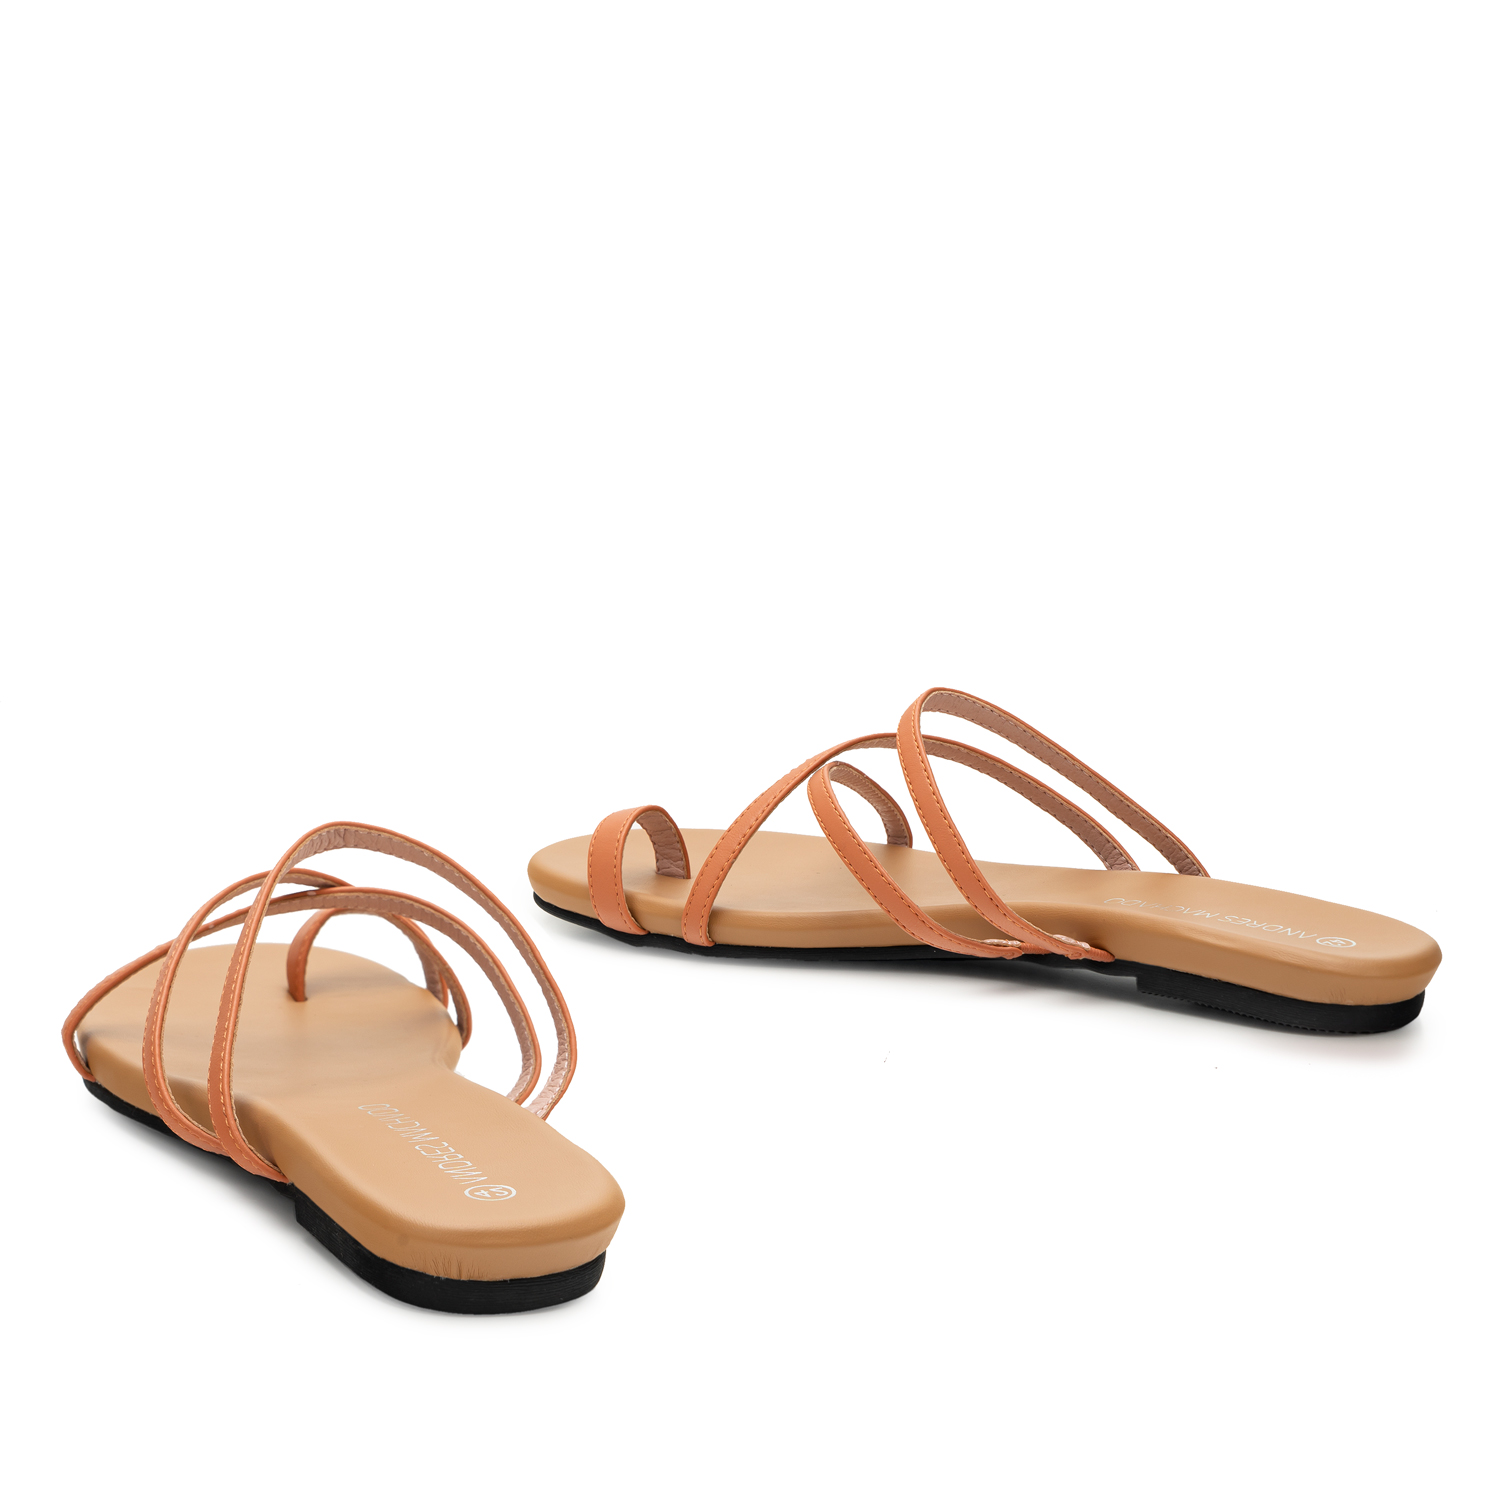 Flache Sandalen aus orangem Lederimitat 